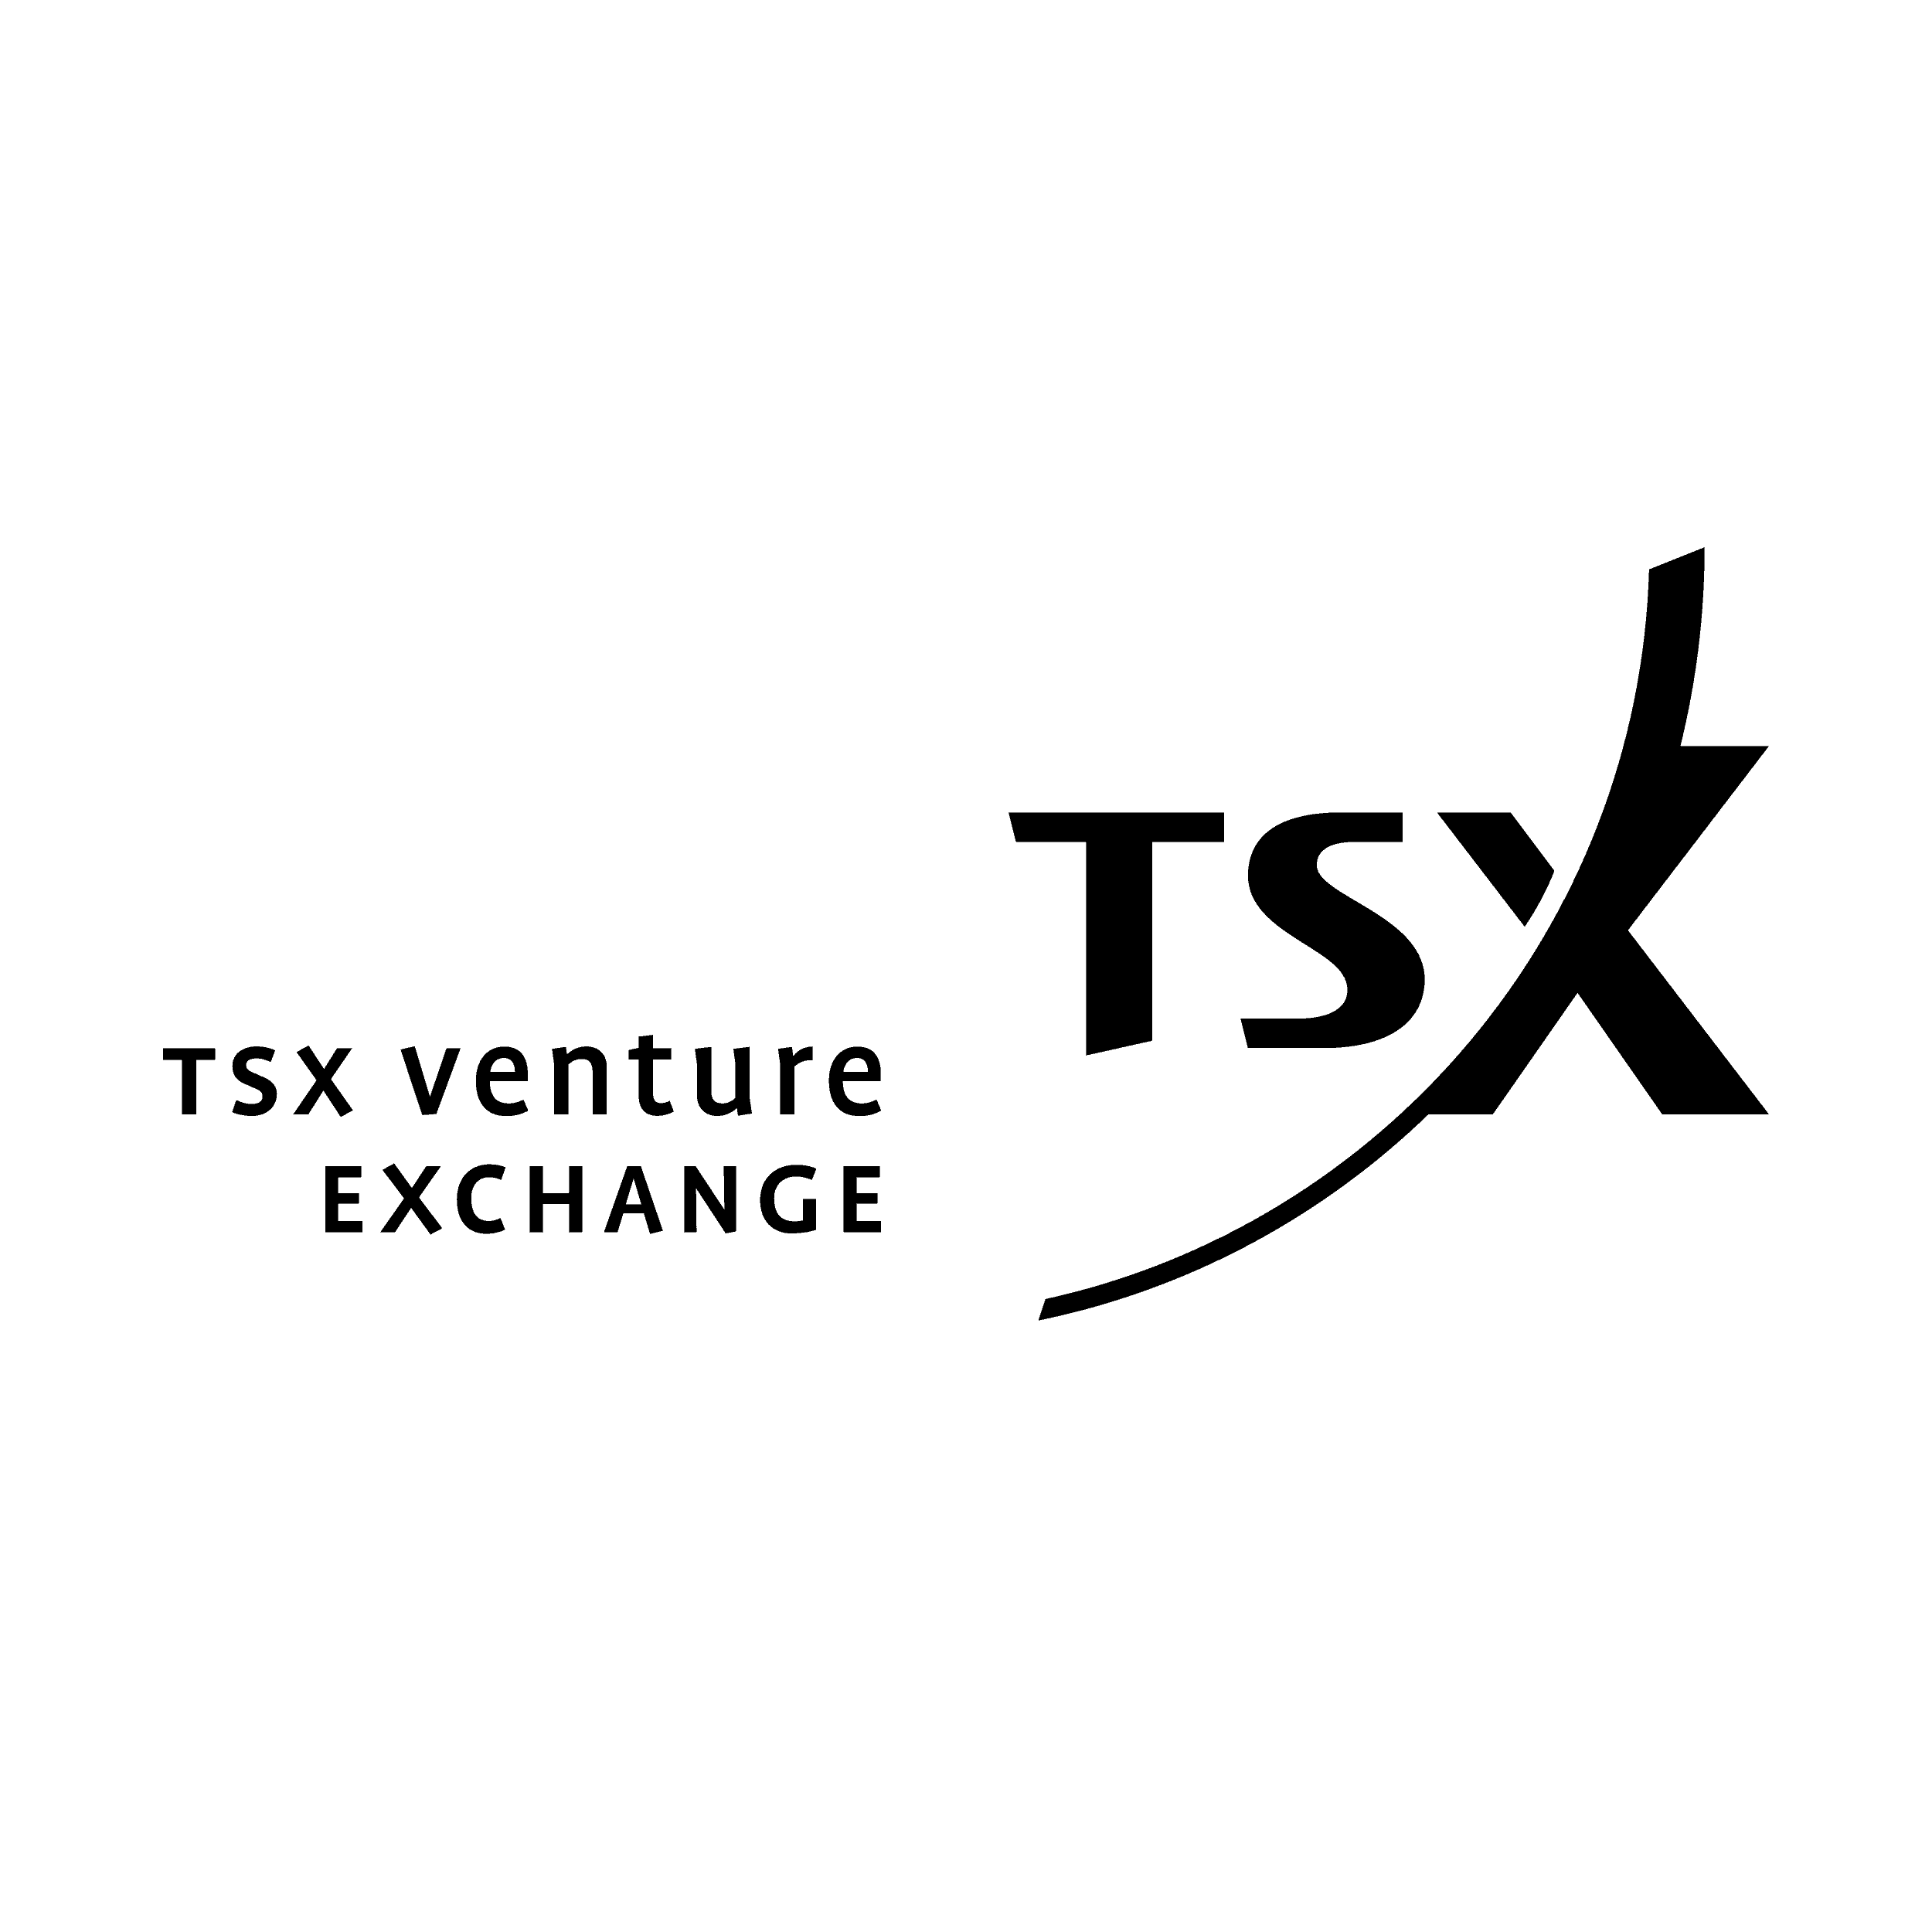 TSX Venture Exchange, TSXV, CPC, Capital Pool Company